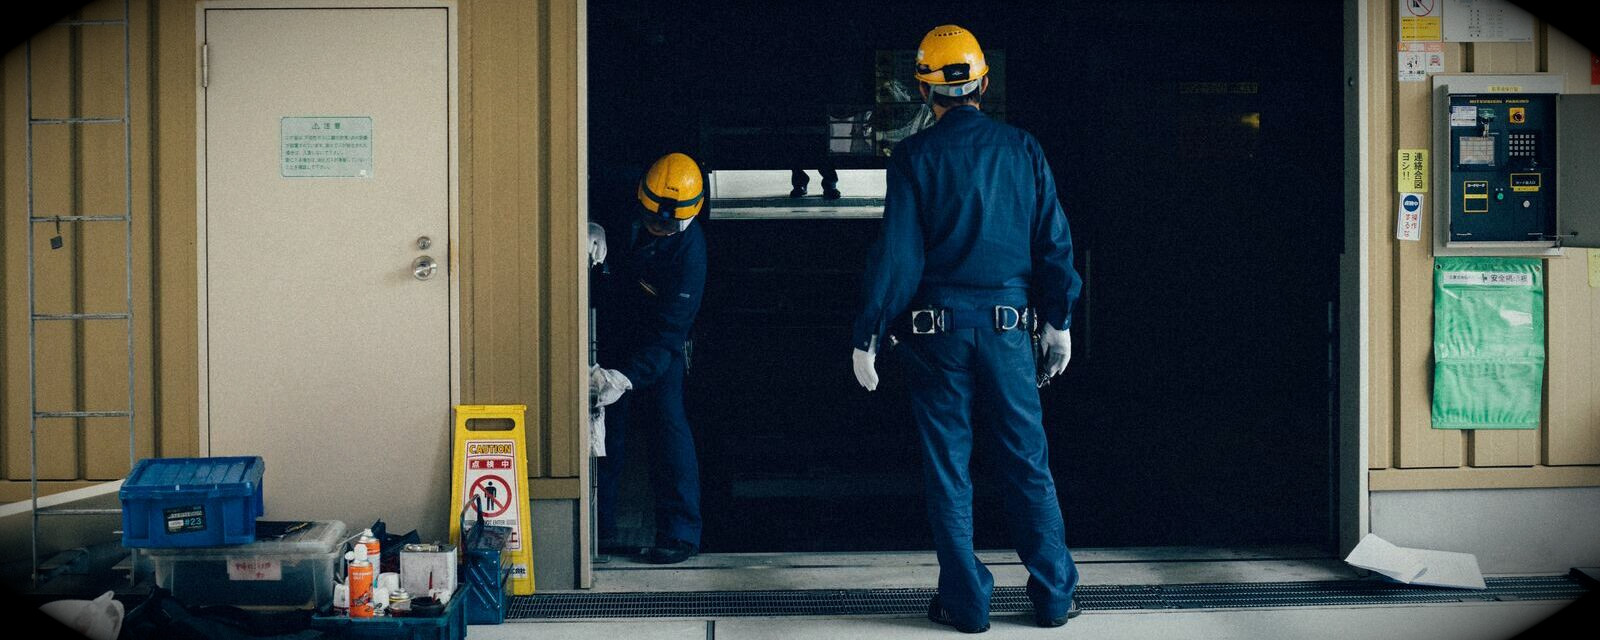 Außendienstarbeiter mit blauem Overall und gelben Helm